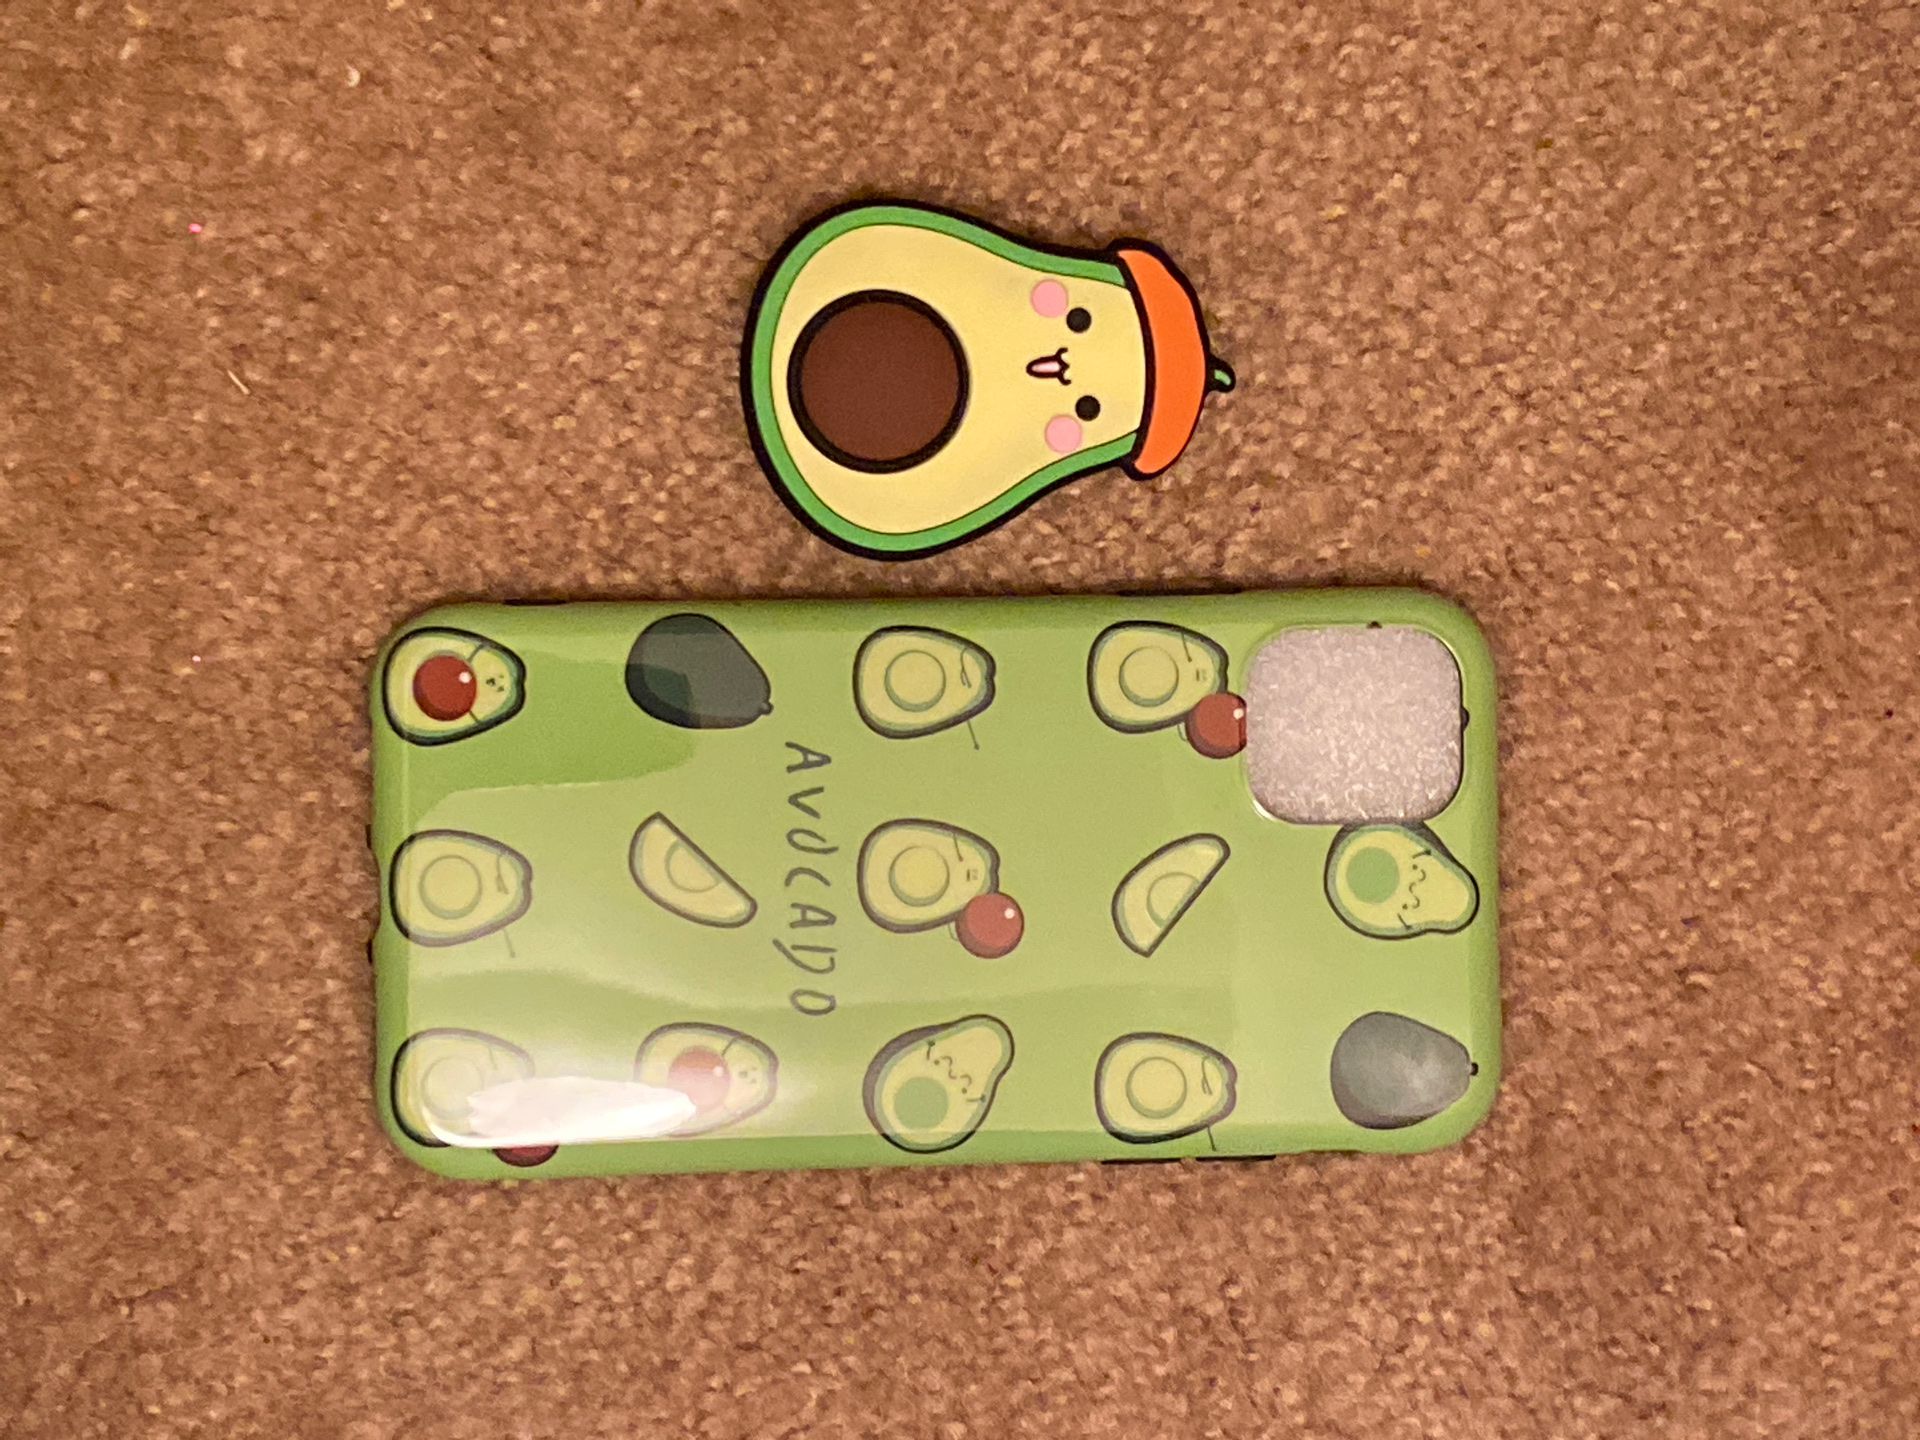 I phone 11 Avocado case and pop socket